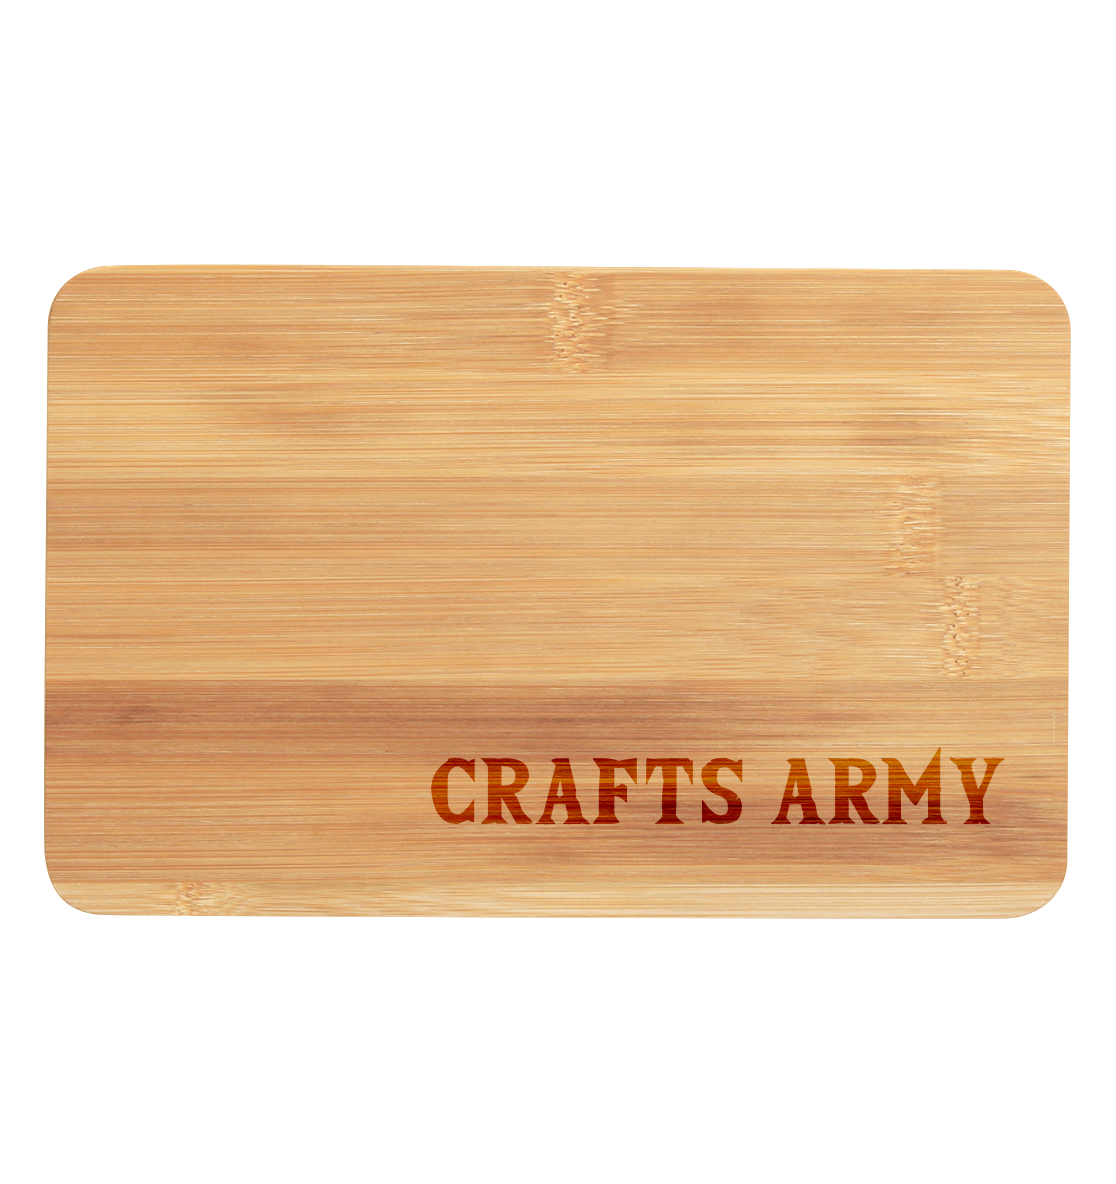 Crafts Army Gravur - Premium Bambus Brettchen